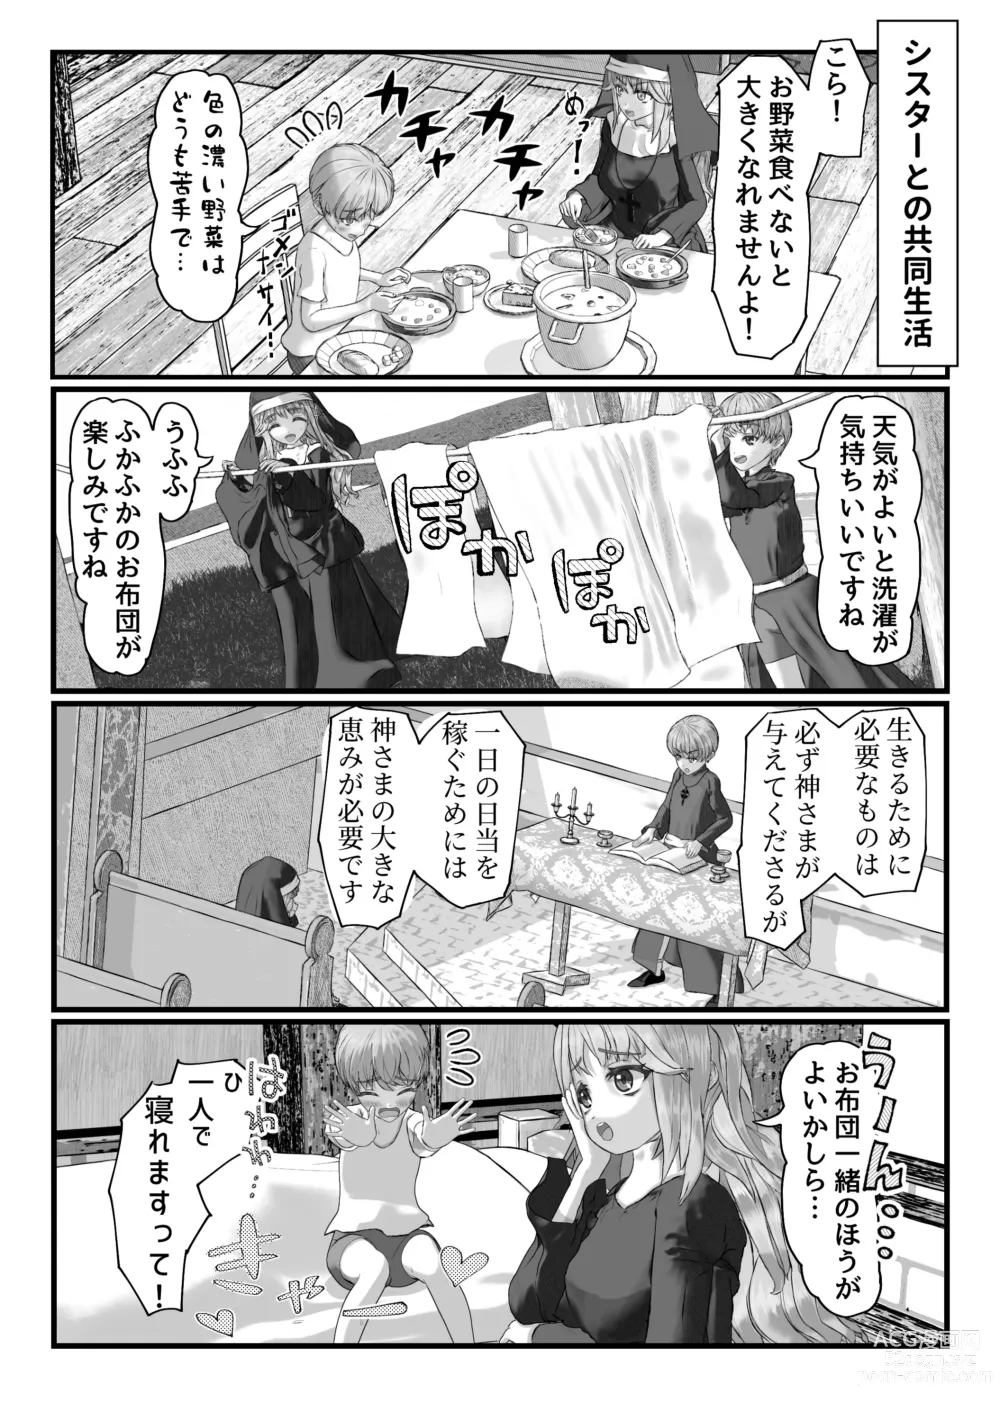 Page 9 of doujinshi Fu Honidesuga Osewa ni Natteiru Shisutā o Pantsu no ue kara ijirimasu